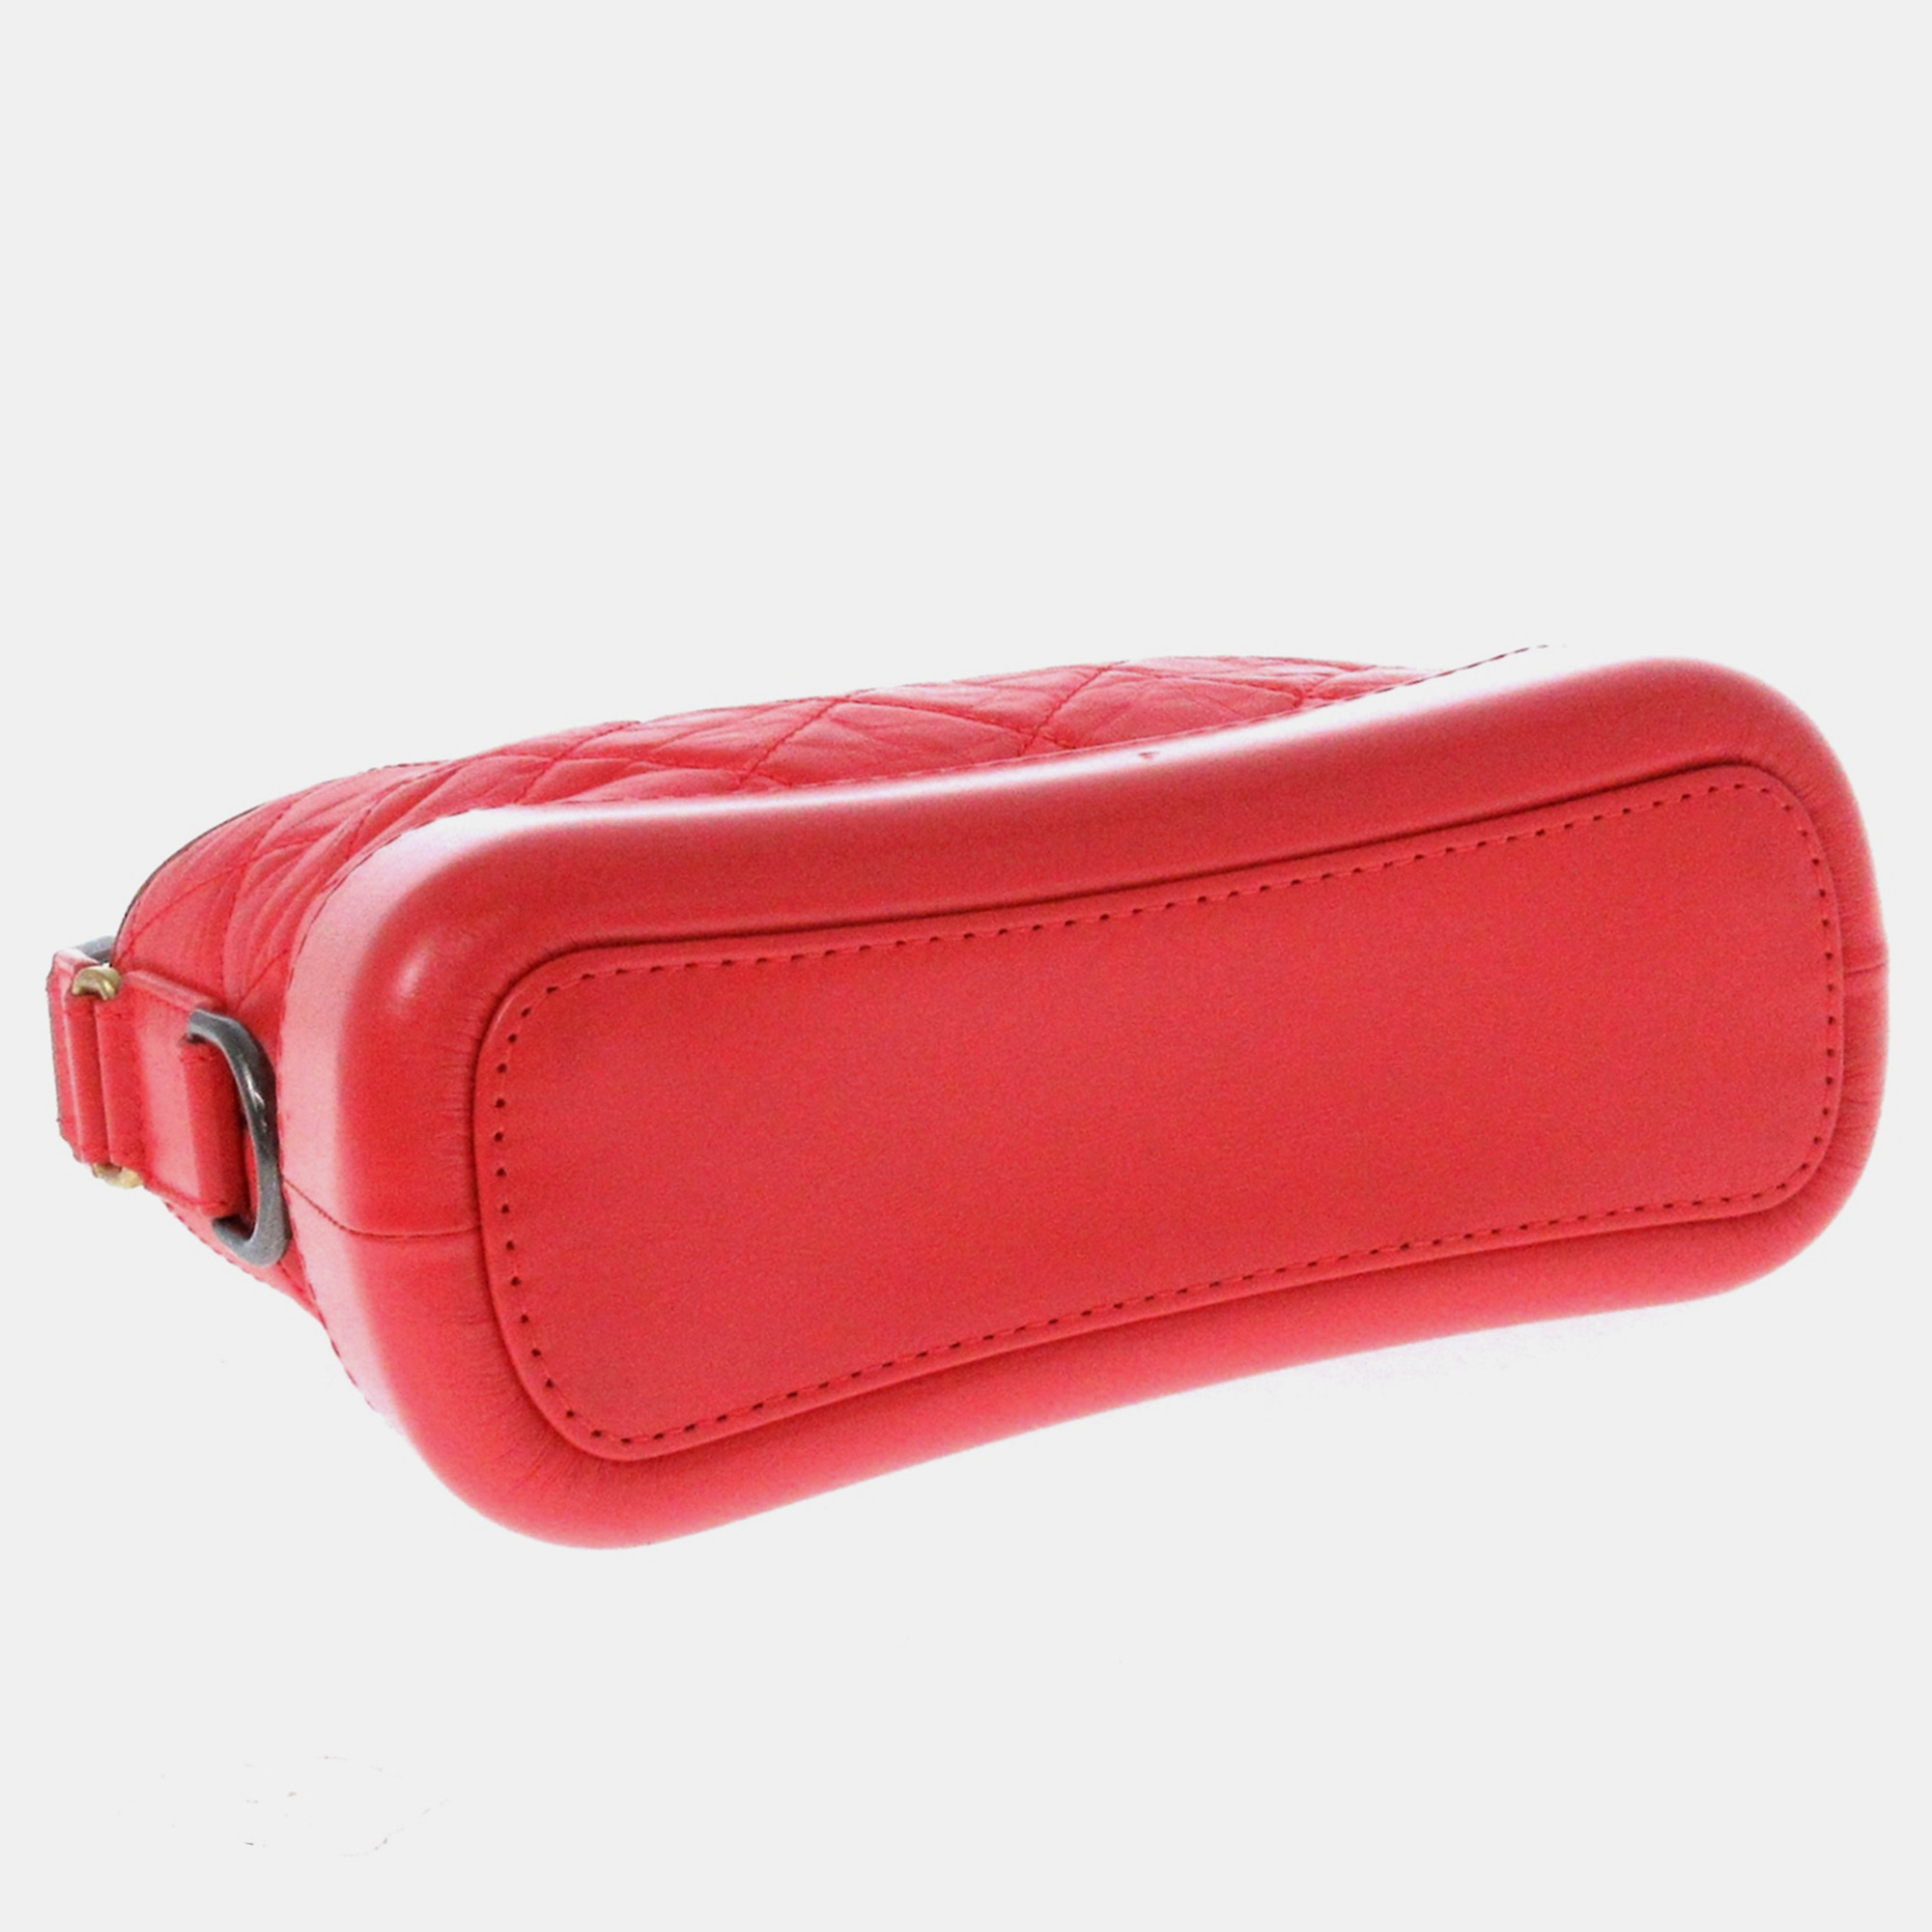 Chanel Red Leather Gabrielle Shoulder Bag